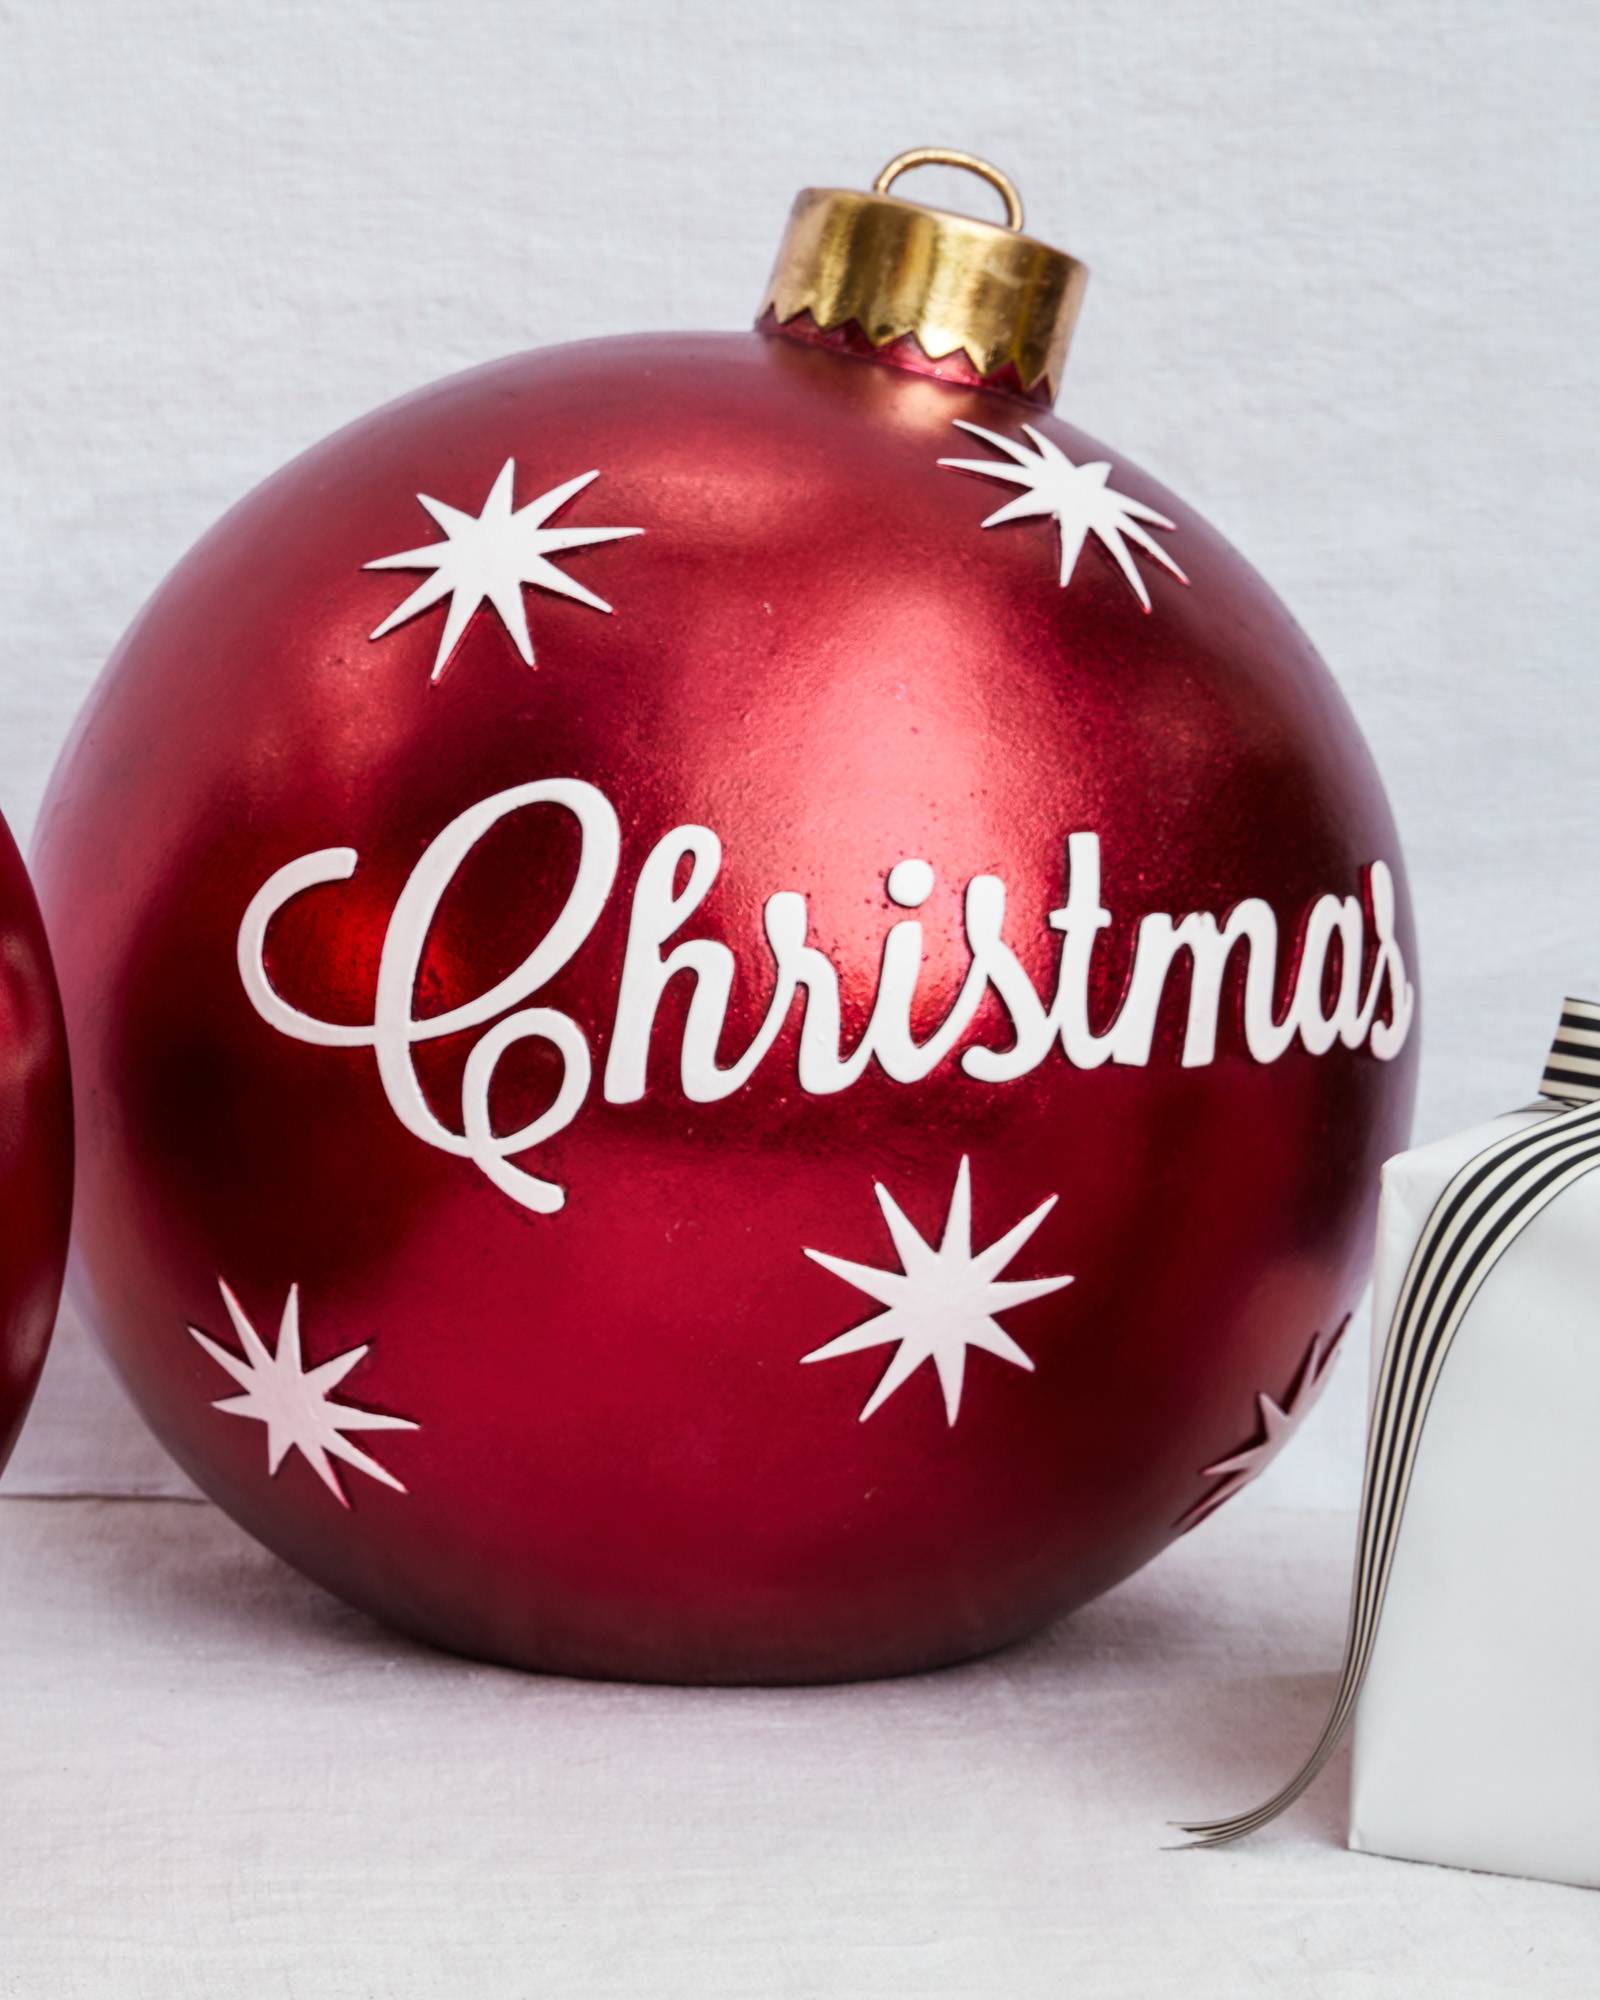 Free photo: Christmas ornaments - Accessory, Santa, Happy - Free